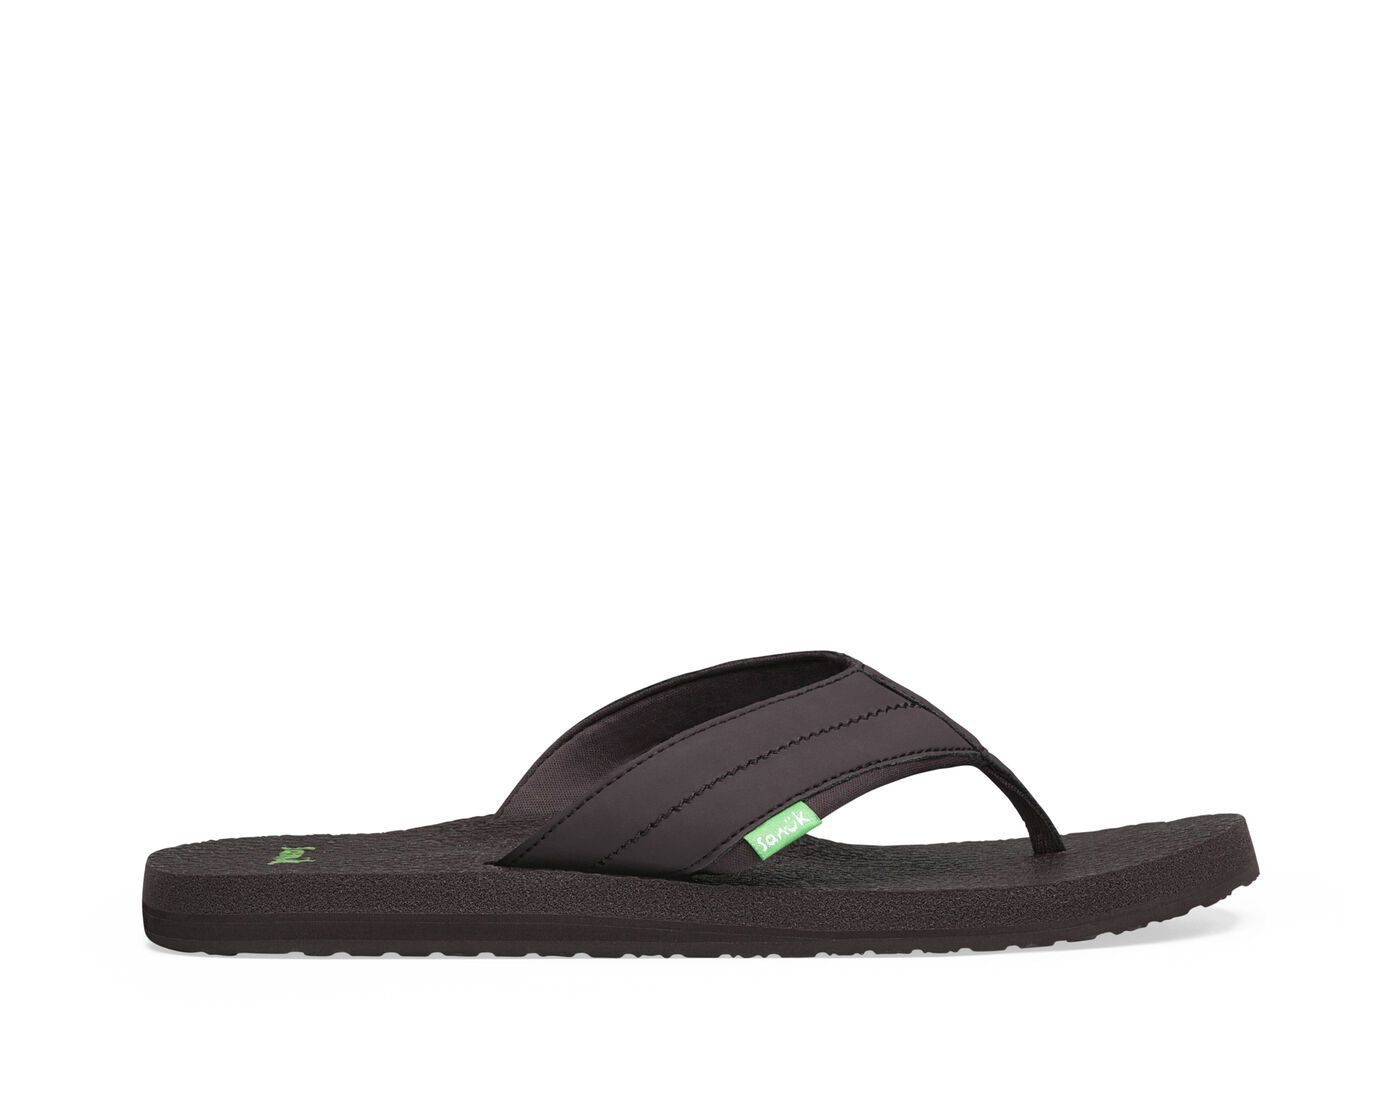 Sandals Flip Flops By Sanuk Size: 9